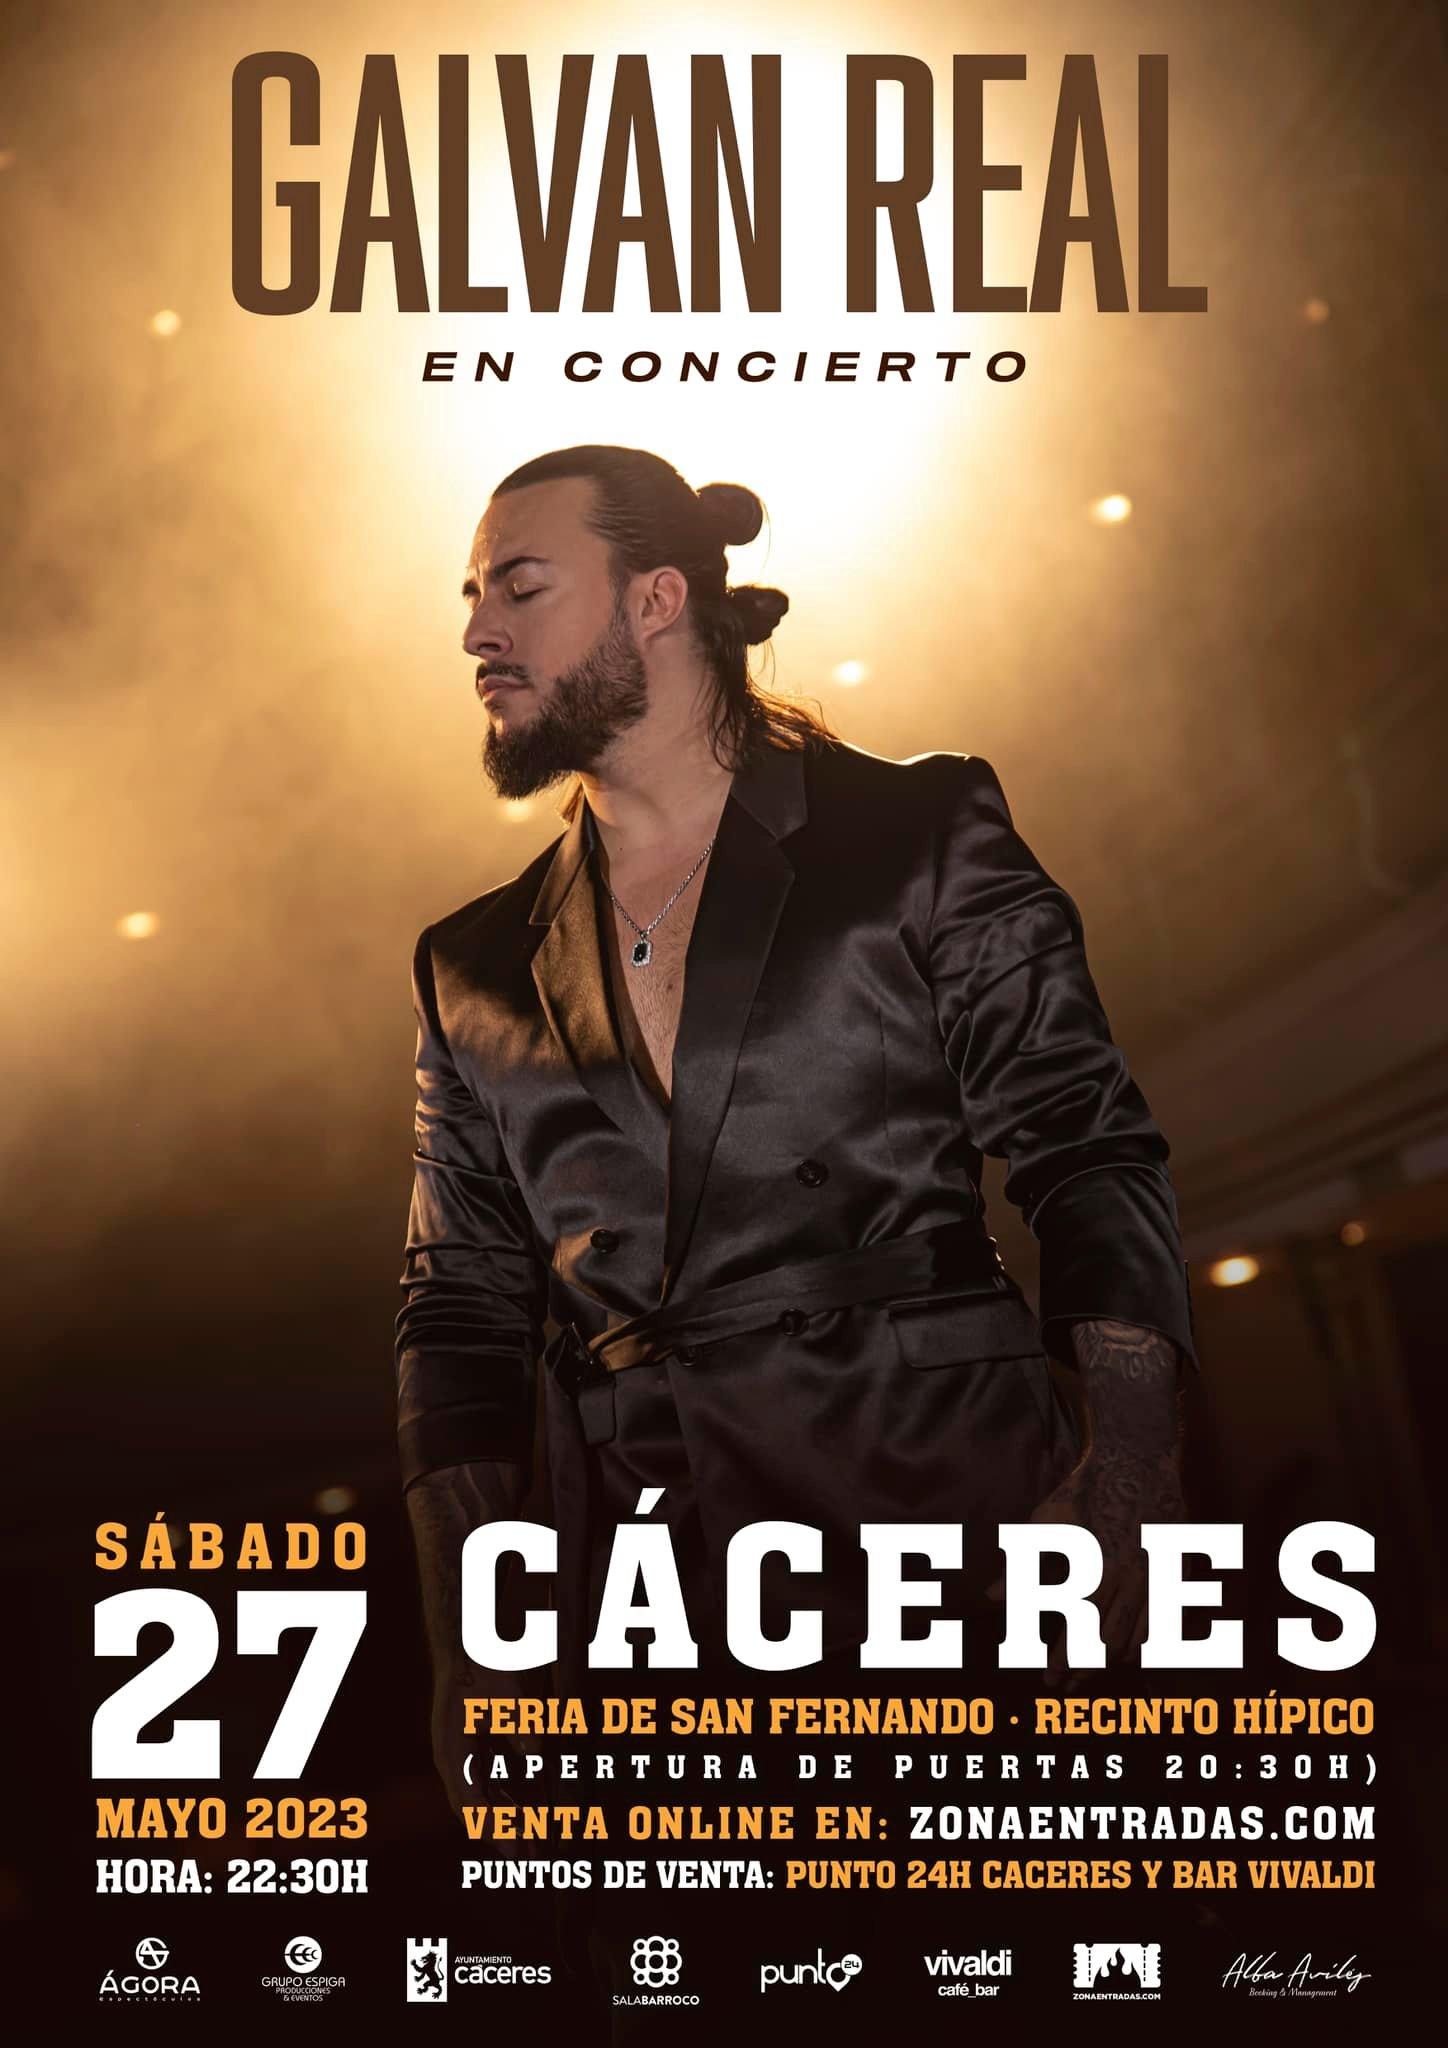 Concierto Galván Real en Cáceres 2023